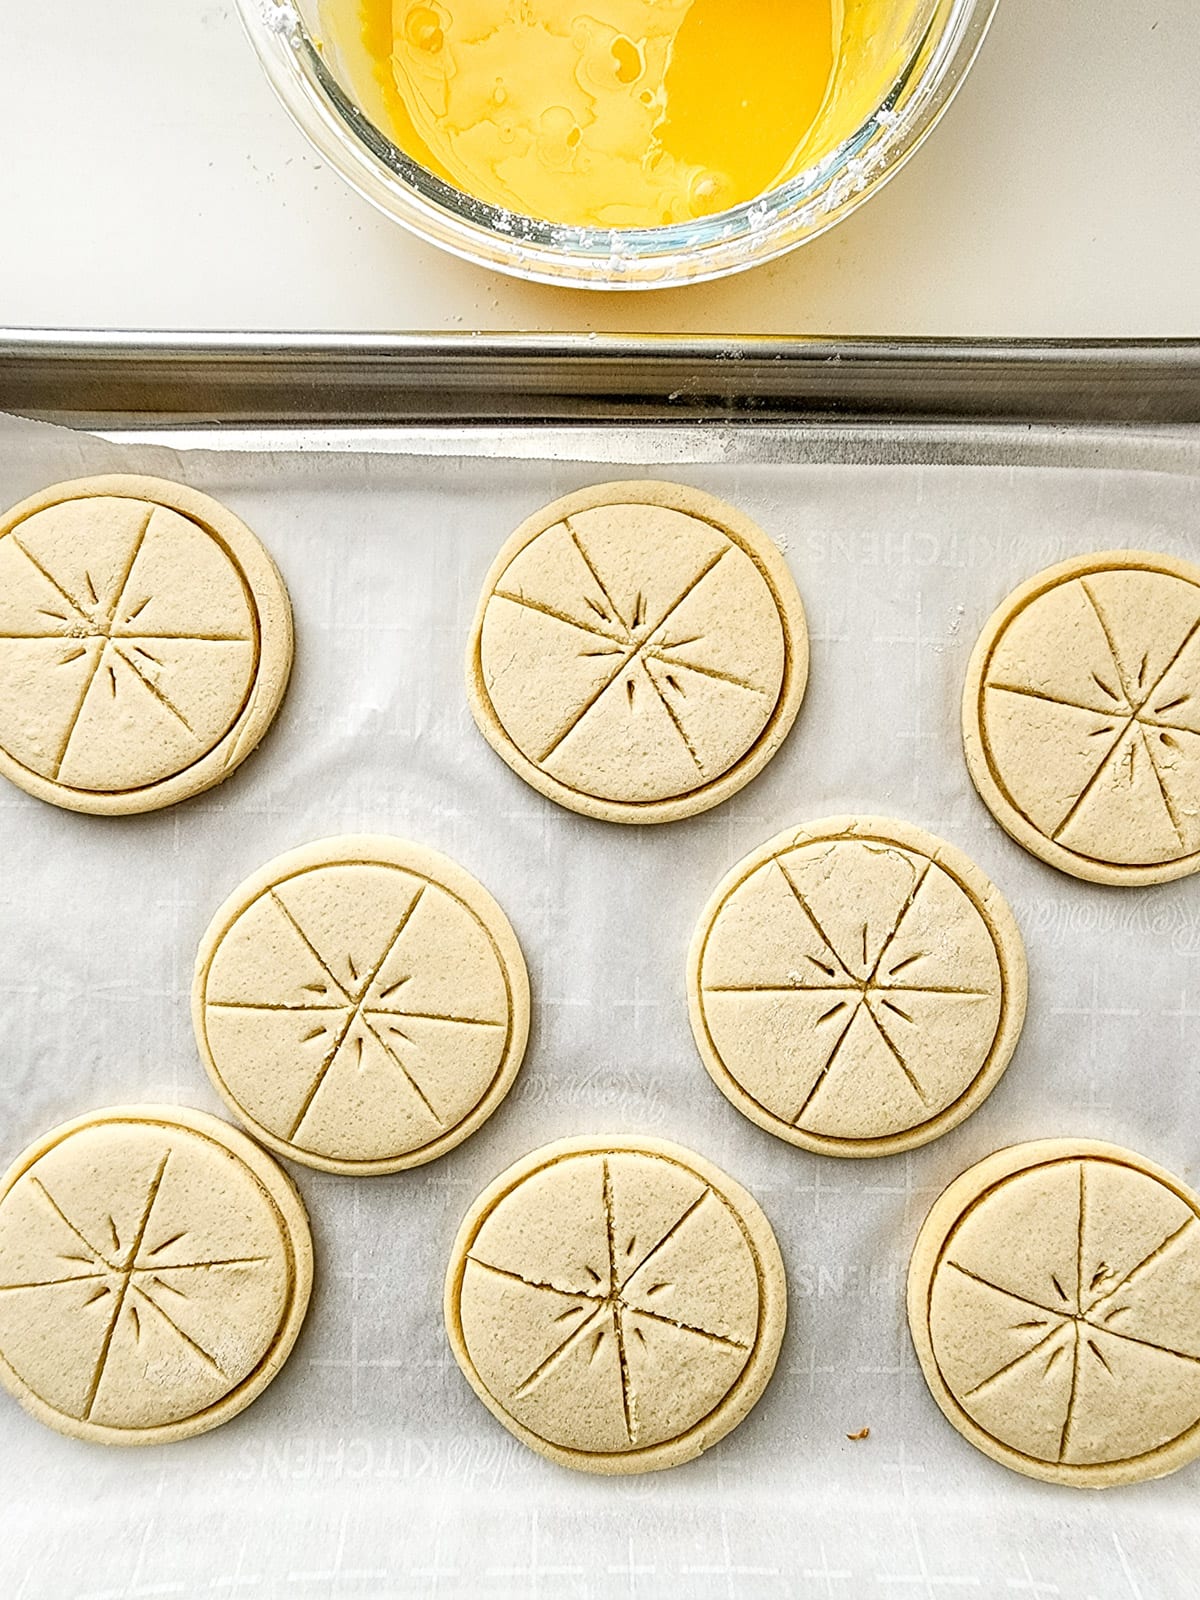 Baked Girl Scout lemonades cookies on cookie sheet